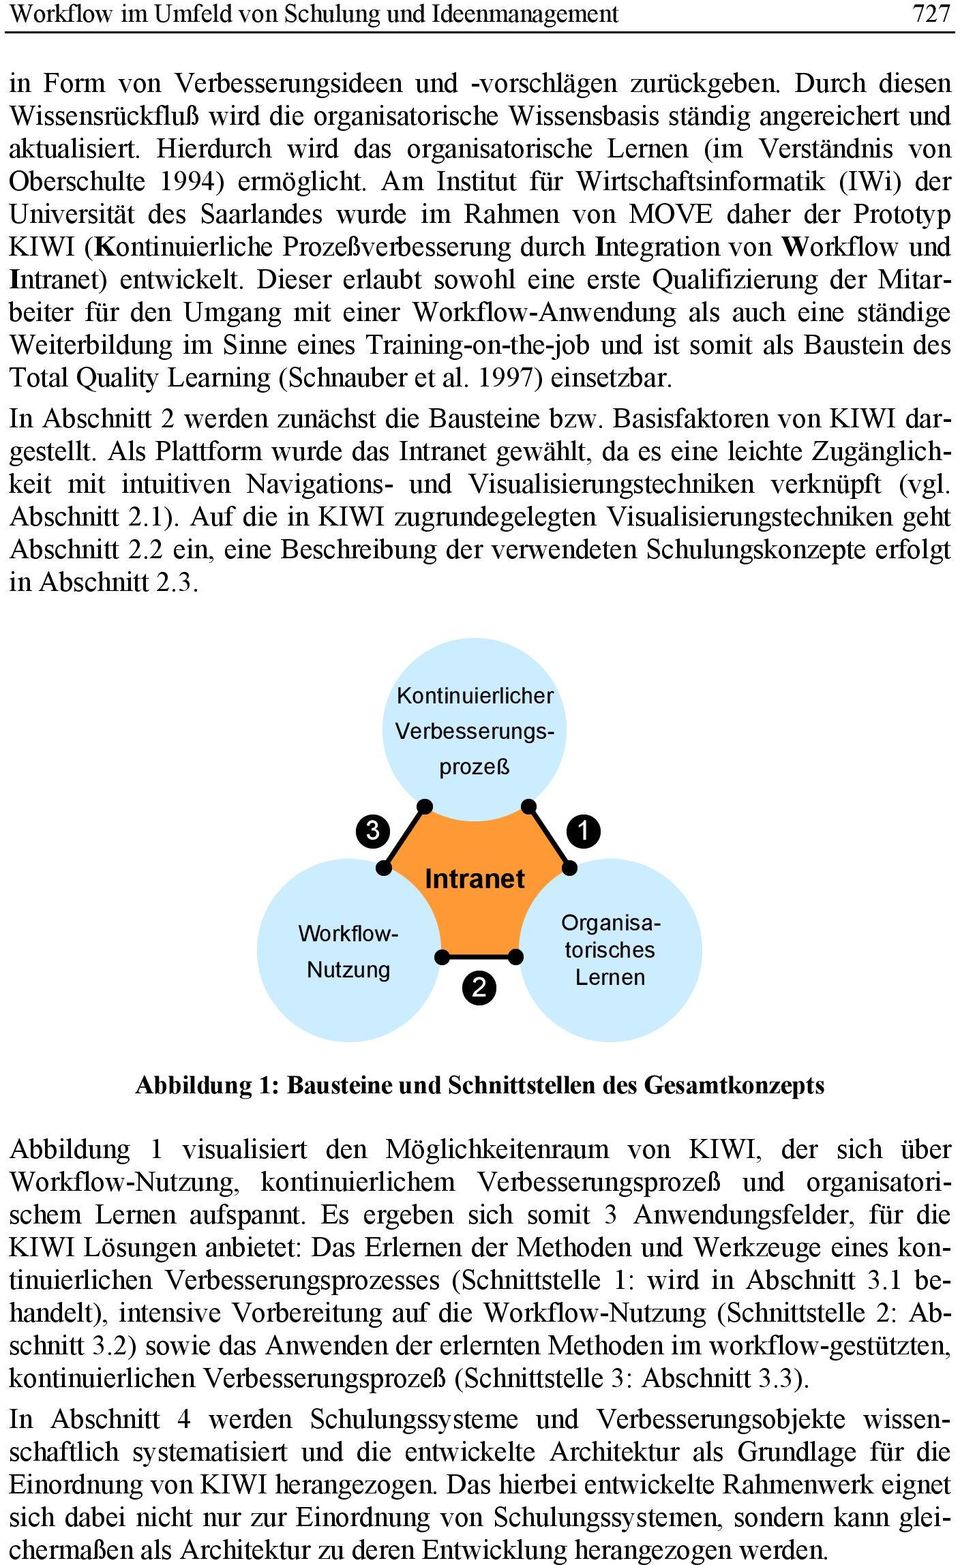 Am Institut für Wirtschaftsinformatik (IWi) der Universität des Saarlandes wurde im Rahmen von MOVE daher der Prototyp KIWI (Kontinuierliche Prozeßverbesserung durch Integration von Workflow und